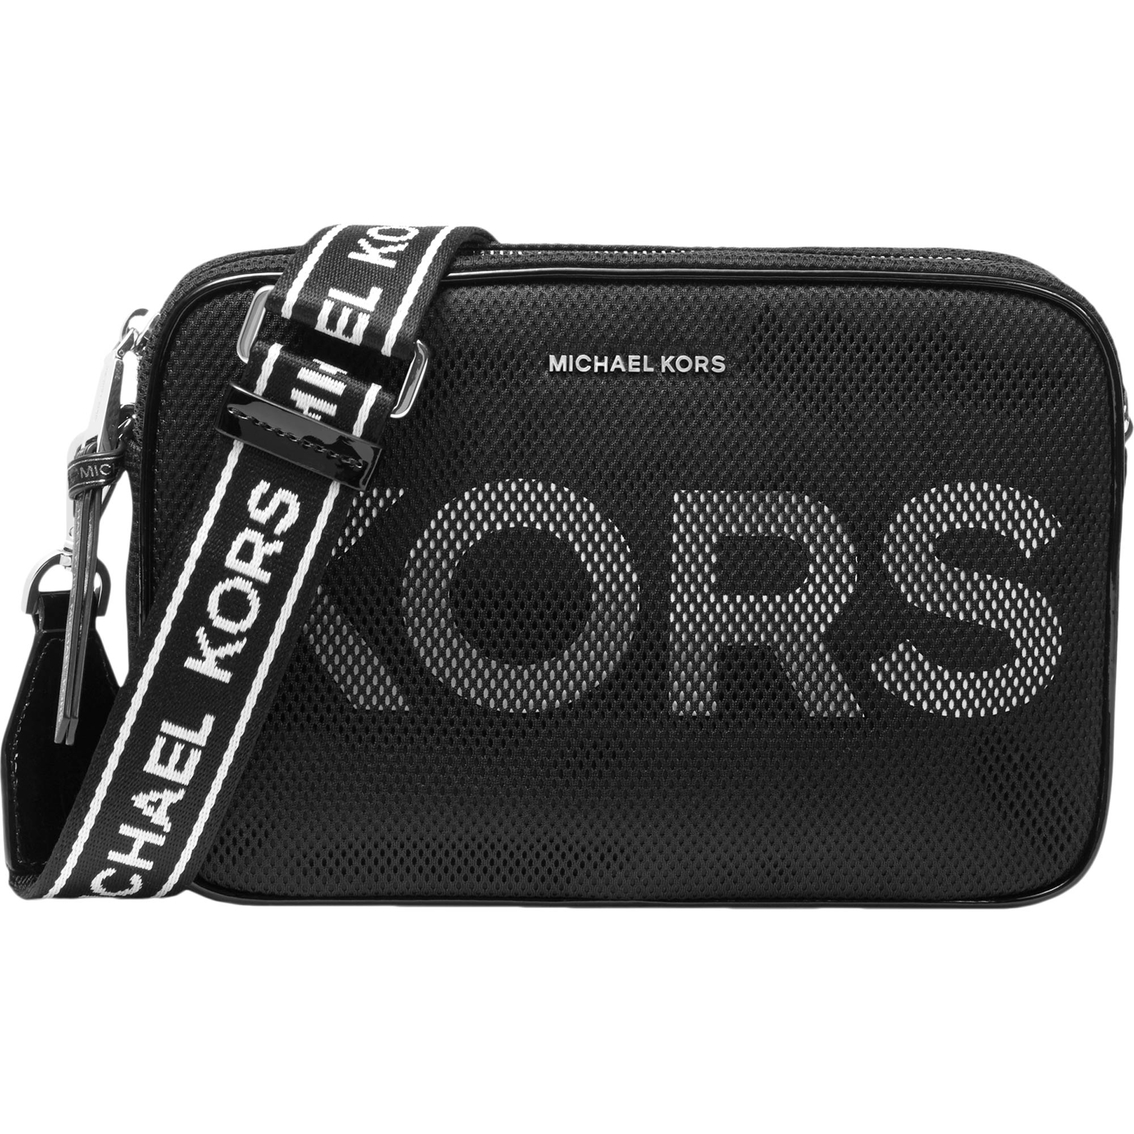 Michael Kors Logo Tape Bag Top Sellers, 52% OFF | www 